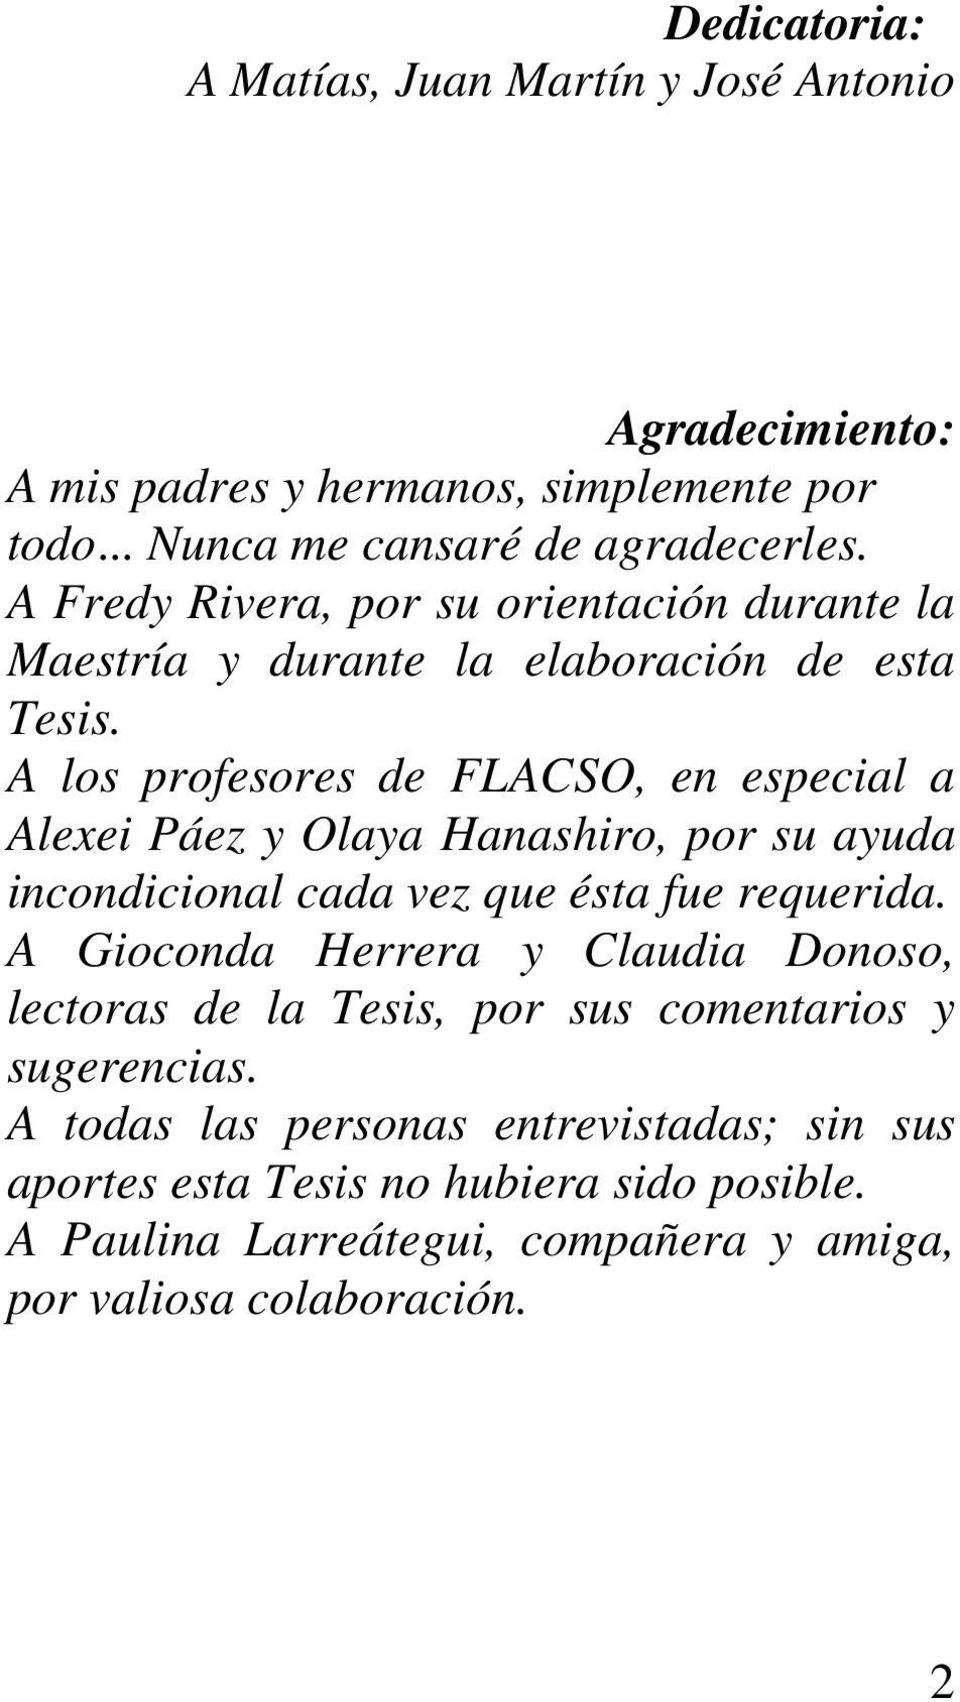 A los profesores de FLACSO, en especial a Alexei Páez y Olaya Hanashiro, por su ayuda incondicional cada vez que ésta fue requerida.